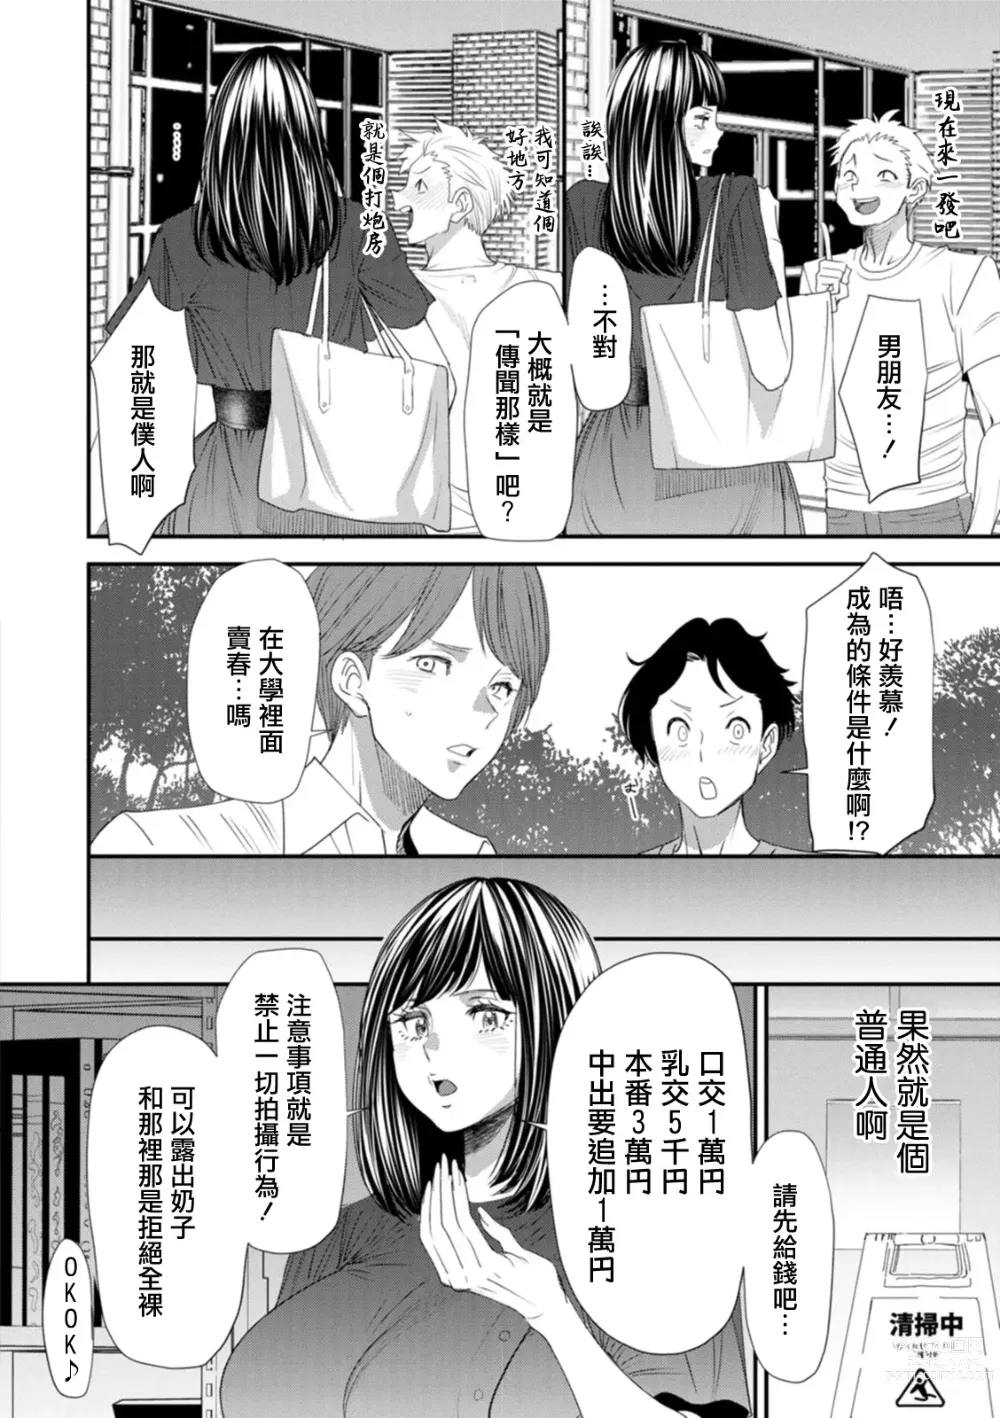 Page 10 of manga Inma Joshi Daisei no Yuuutsu Ch. 1 Uwasa no Joshidaisei Takemi  Yuki